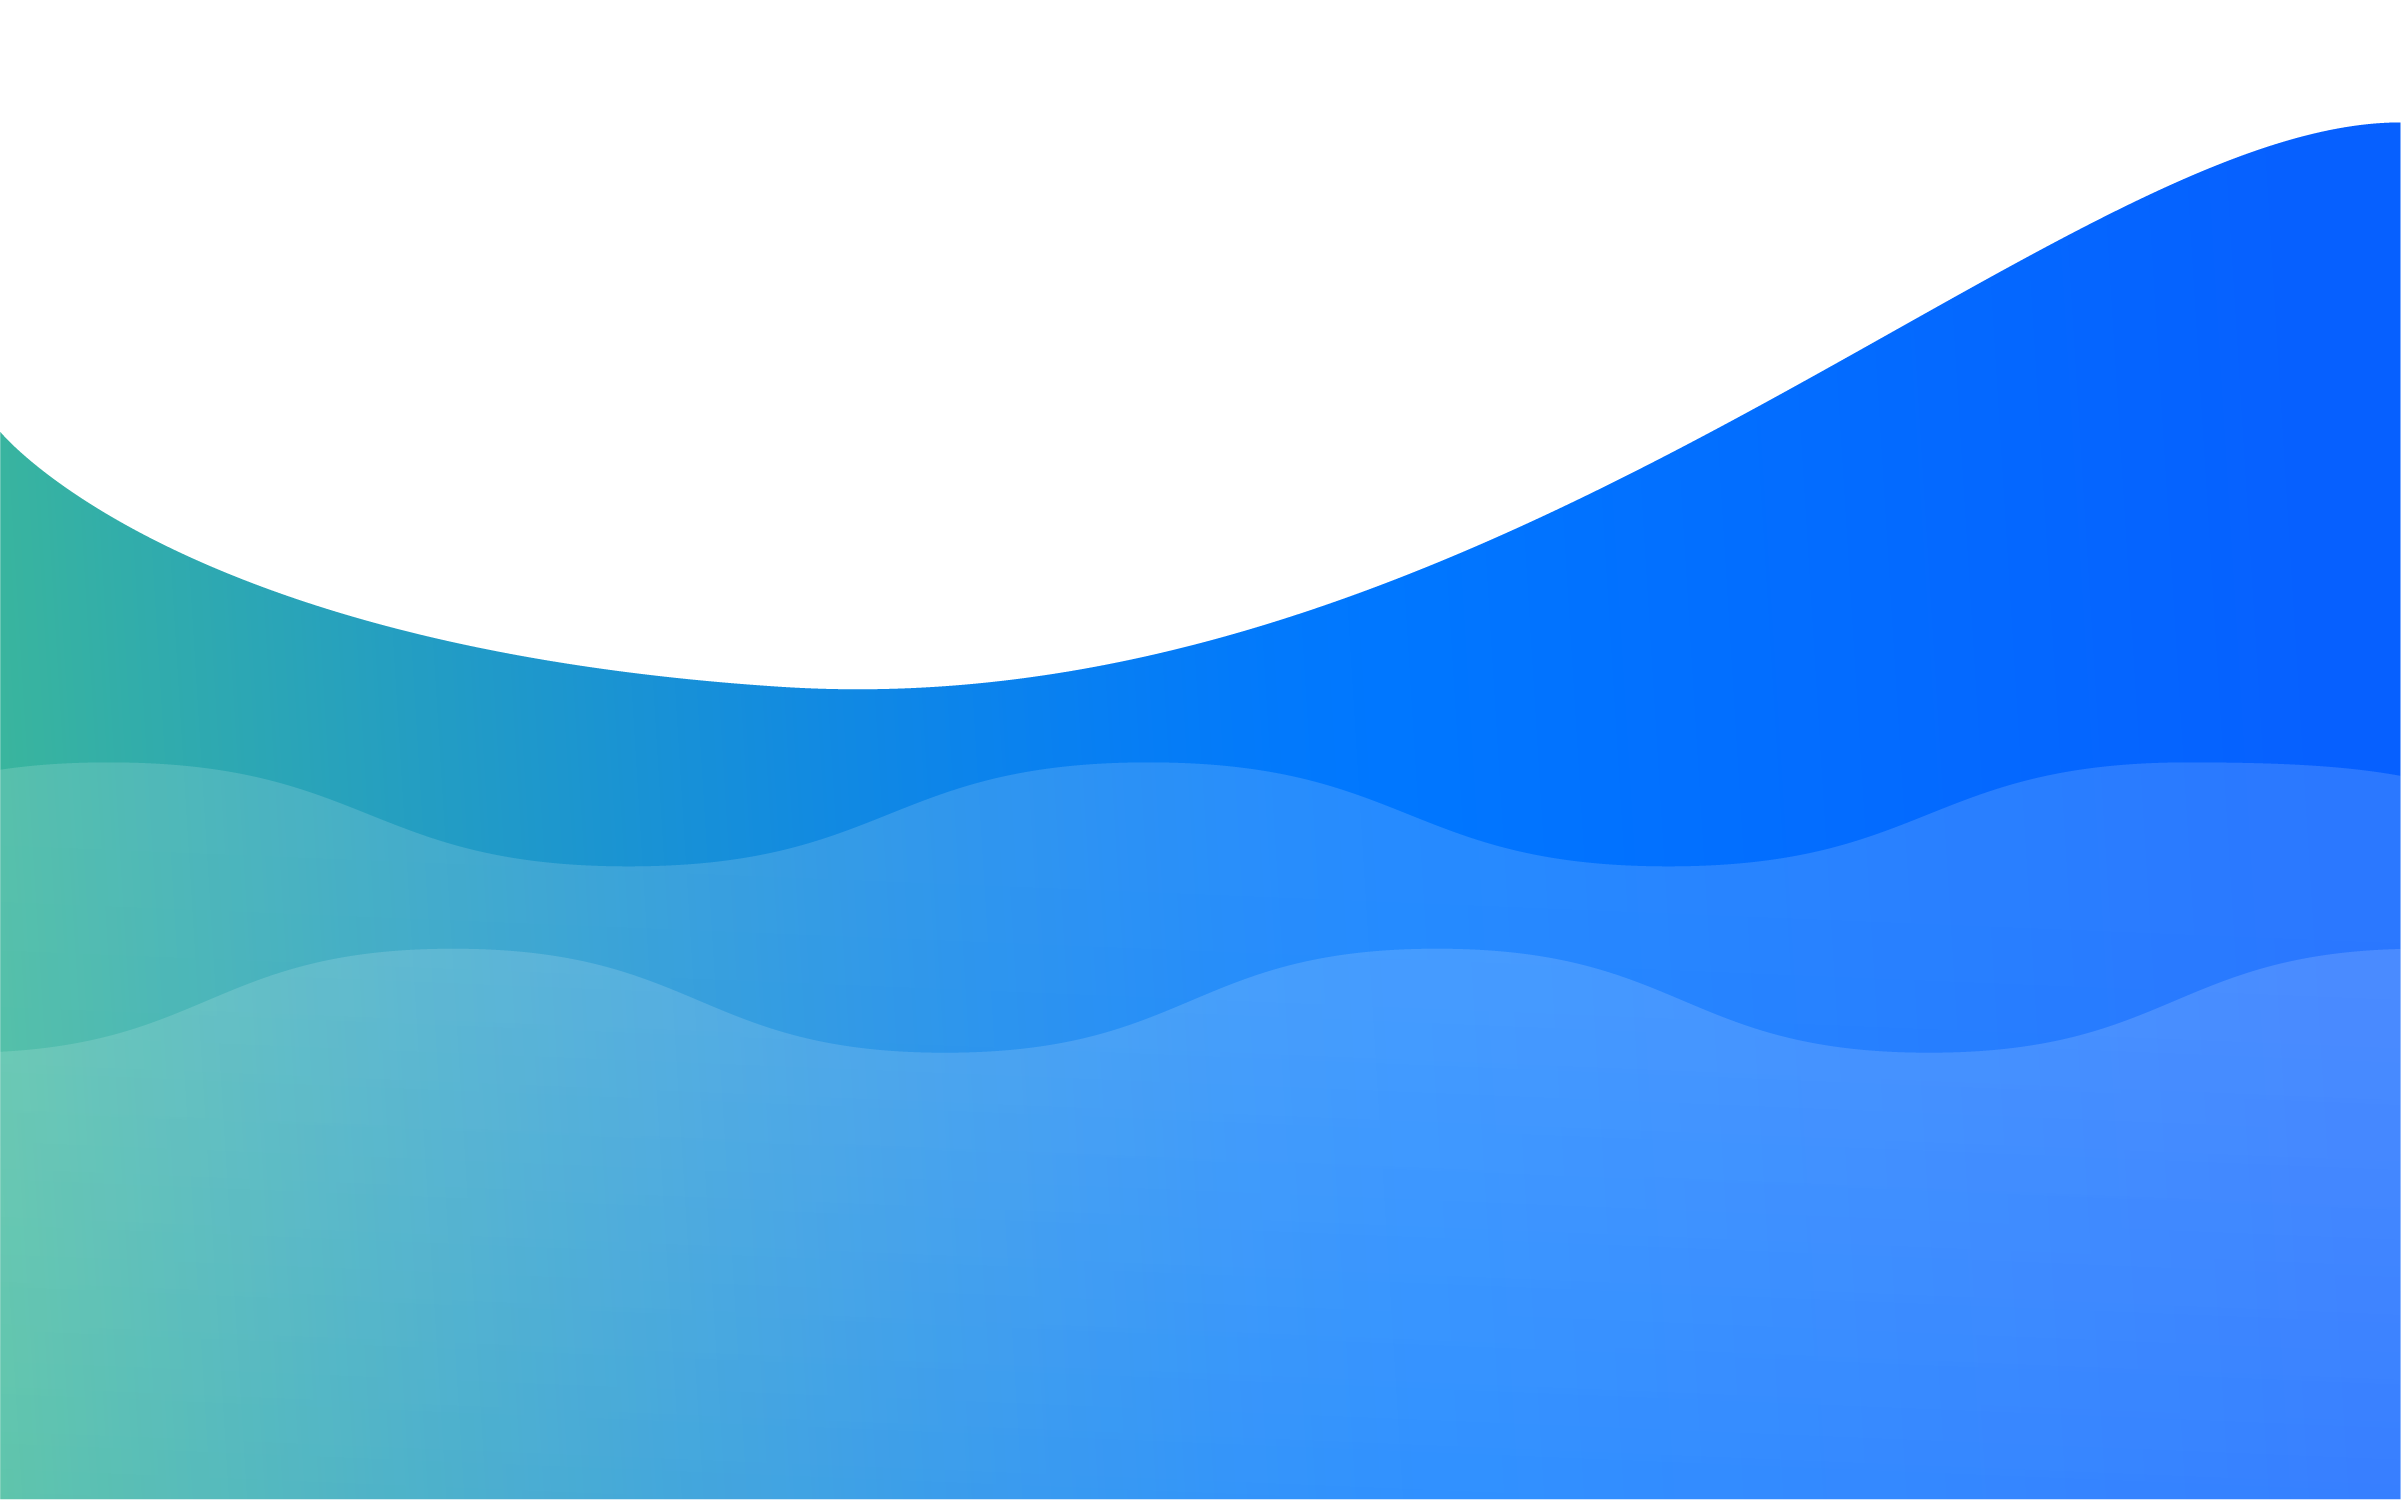 Wave background image